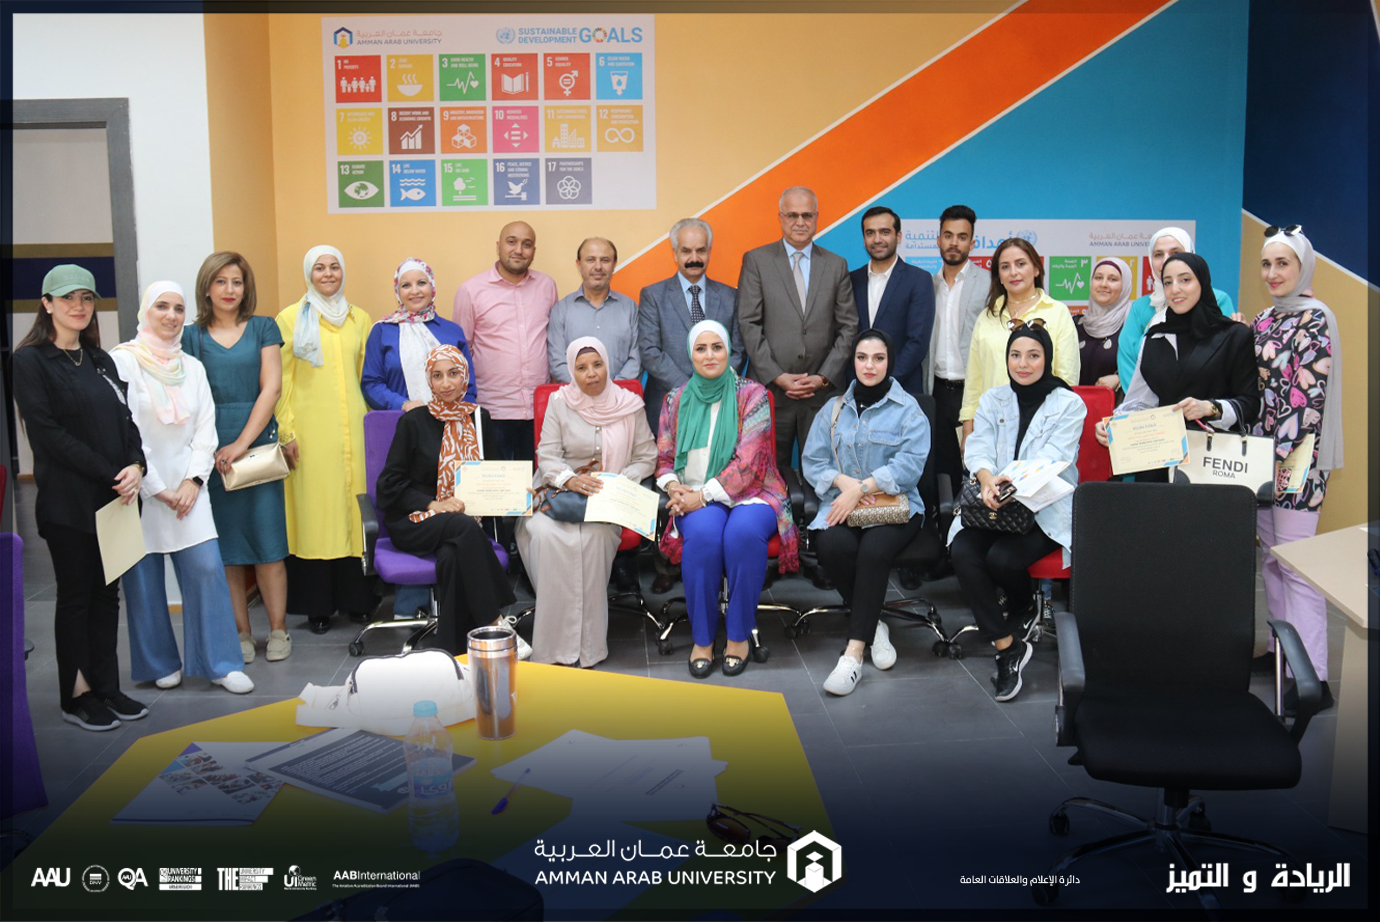 كلية الأعمال في "عمان العربية" تنفذ ورشة عمل لخريجي تخصص الموارد البشرية 2